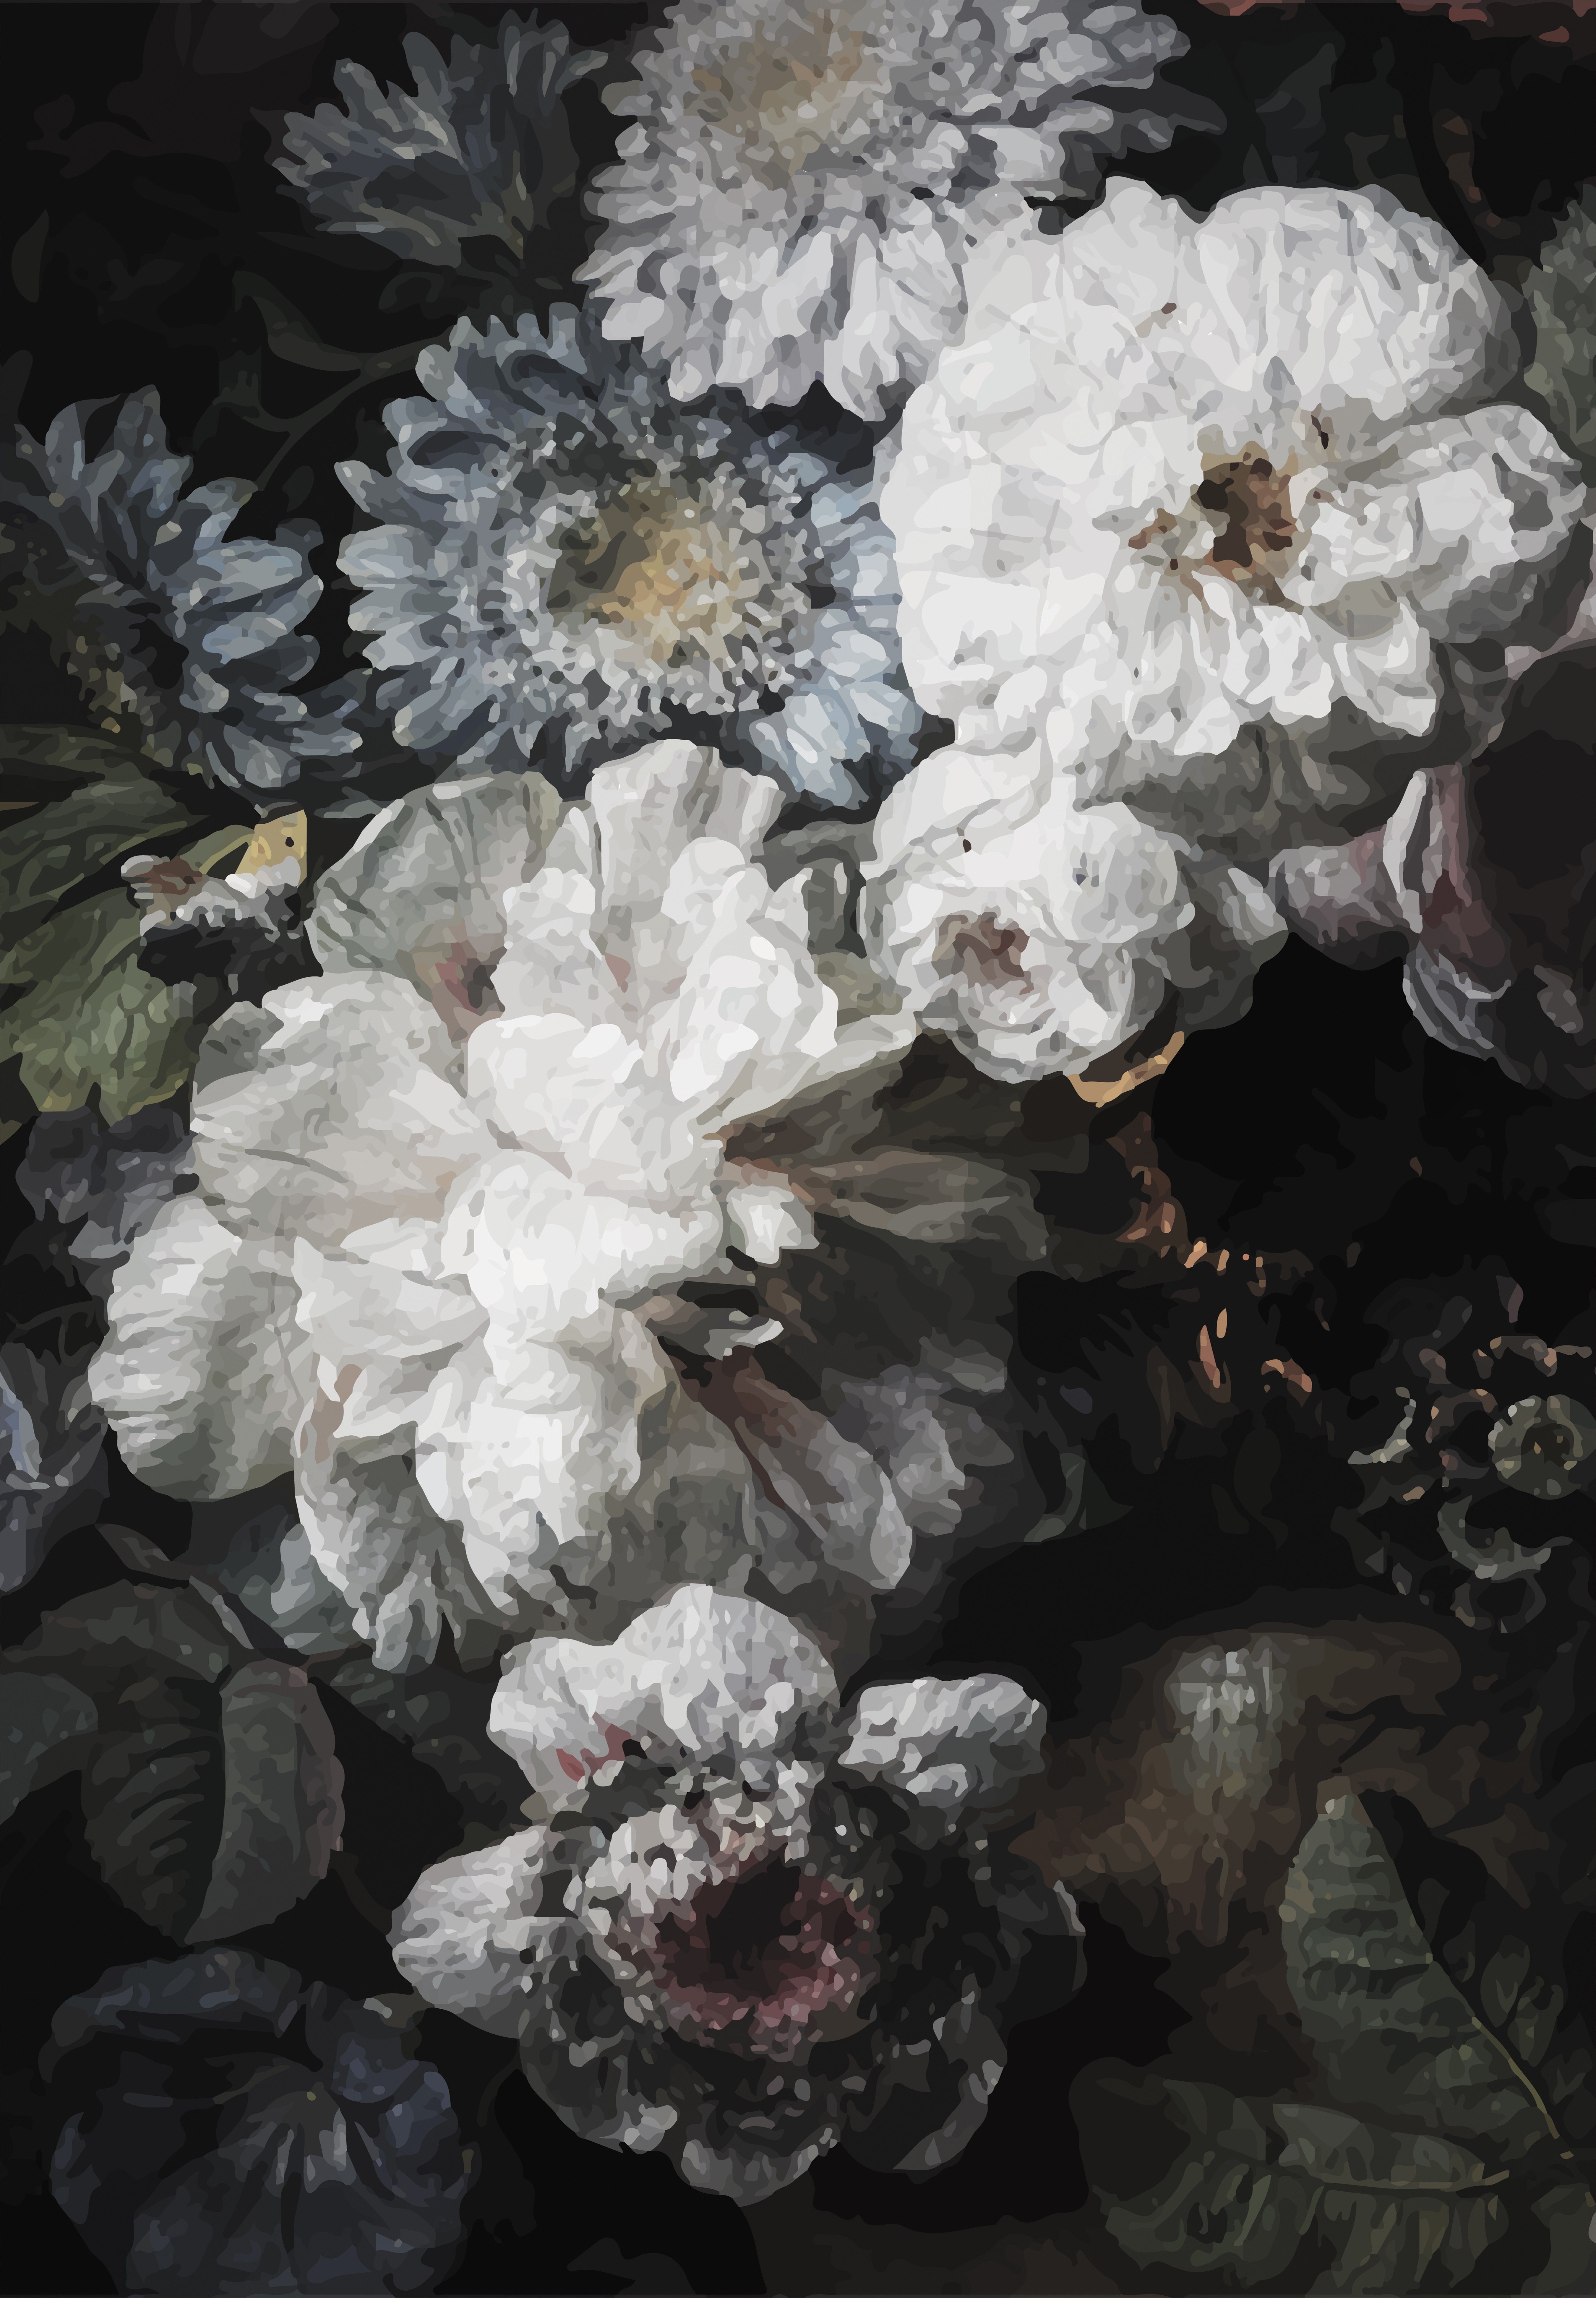 dark floral wallpaper,flower,petal,still life,plant,still life photography